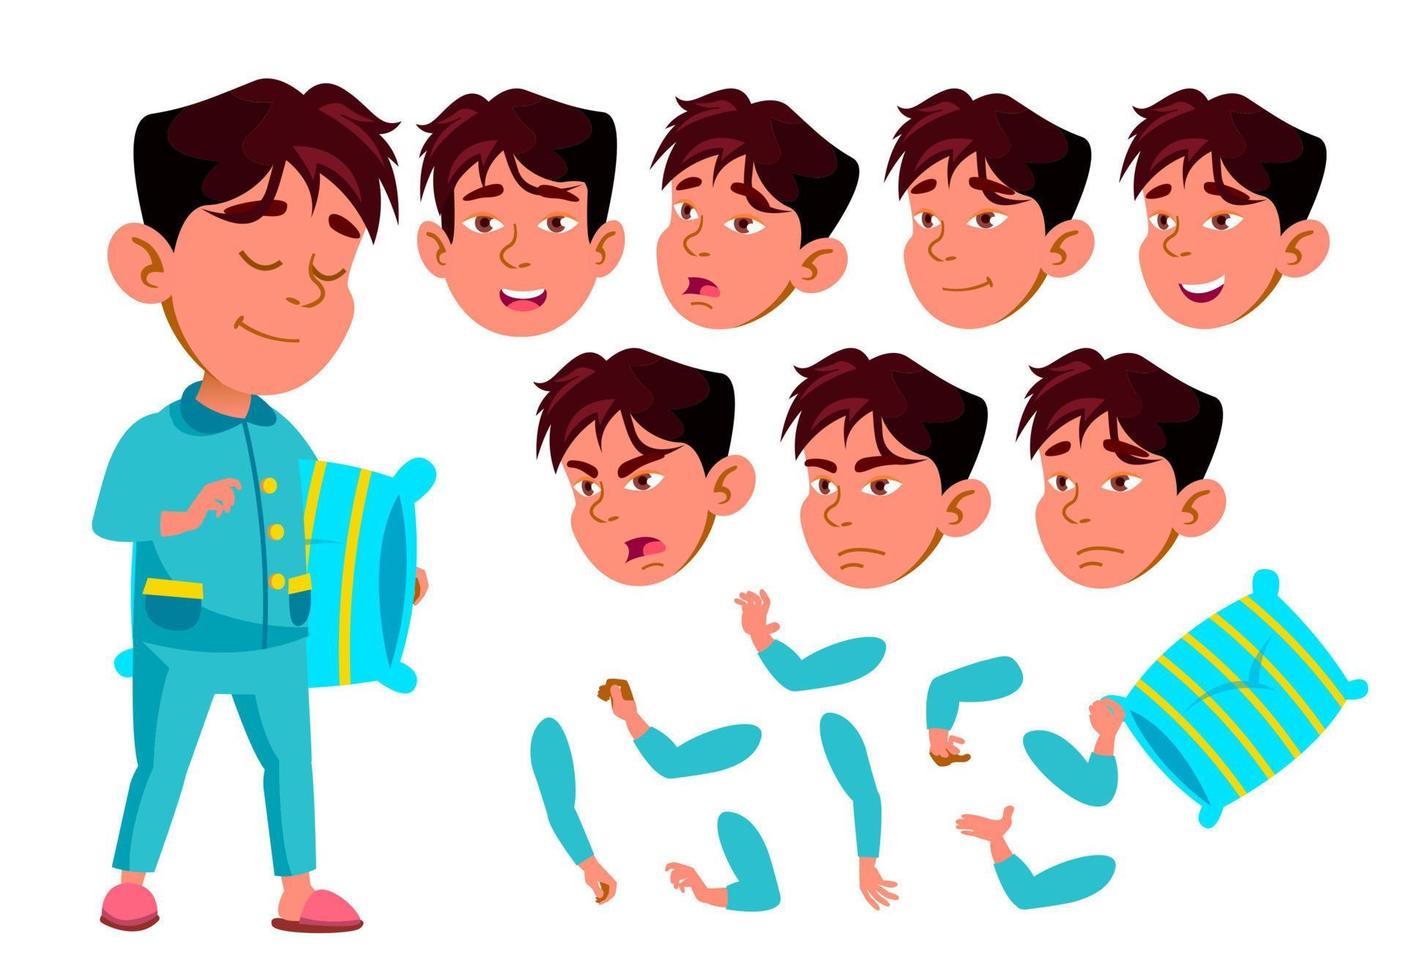 asiatischer Junge, Kind, Kind, jugendlich Vektor. Schulkind. Vorlesung. Gesicht Emotionen, verschiedene Gesten. Animationserstellungsset. isolierte flache zeichentrickfigur illustration vektor